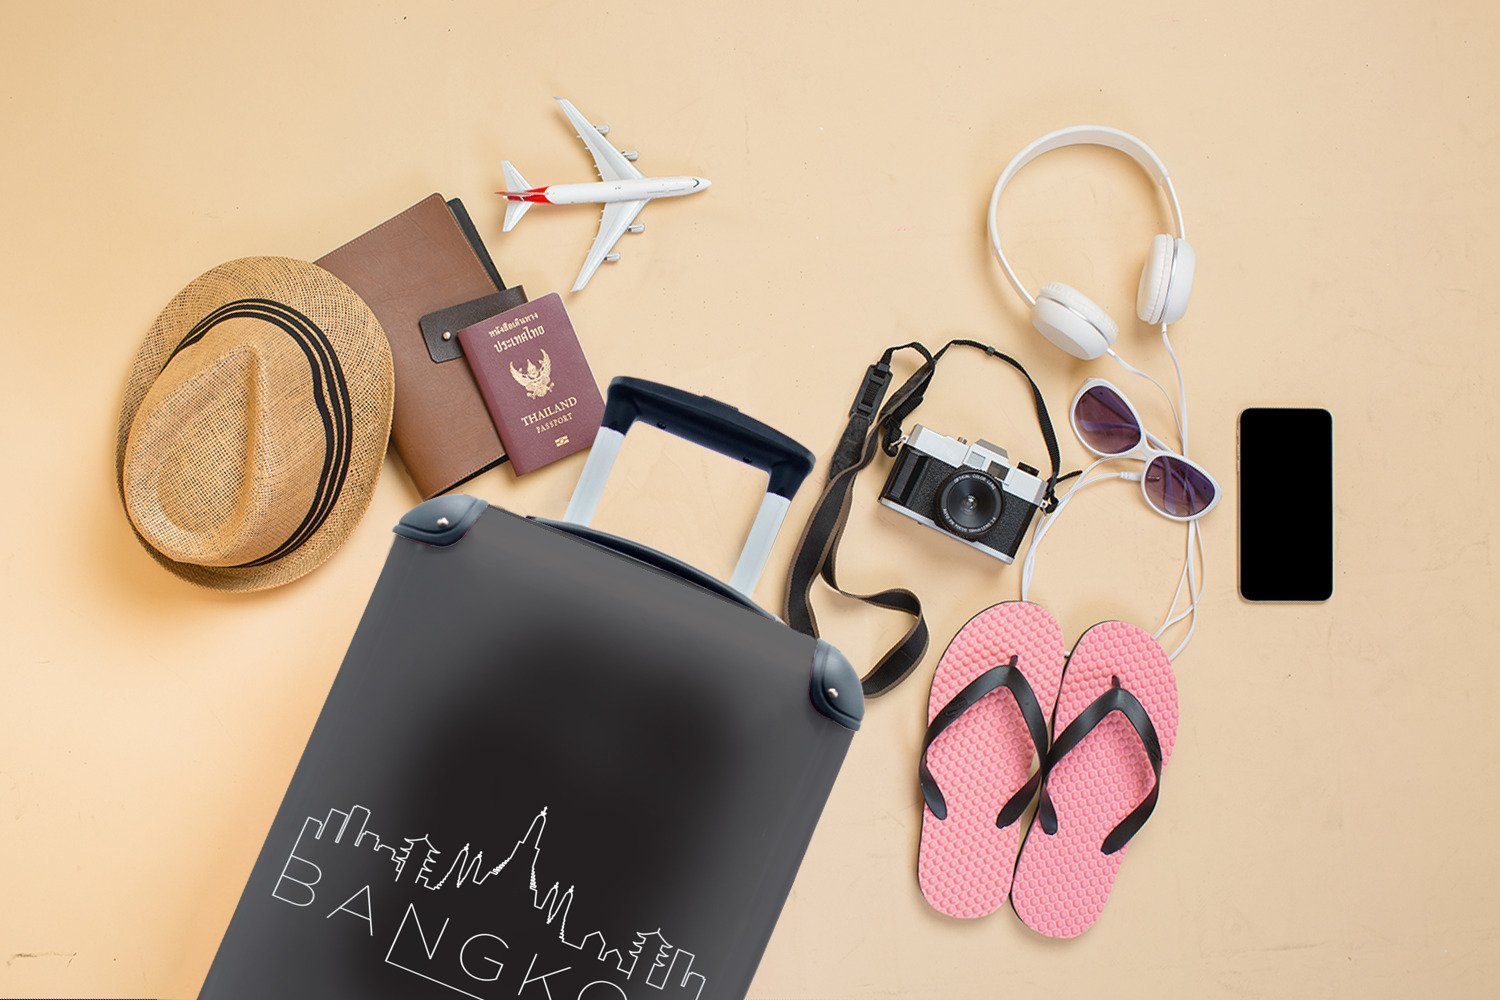 Skyline Trolley, für 4 Handgepäckkoffer Reisetasche Handgepäck Ferien, "Bangkok" auf Reisekoffer rollen, weiß MuchoWow schwarz, mit Rollen,